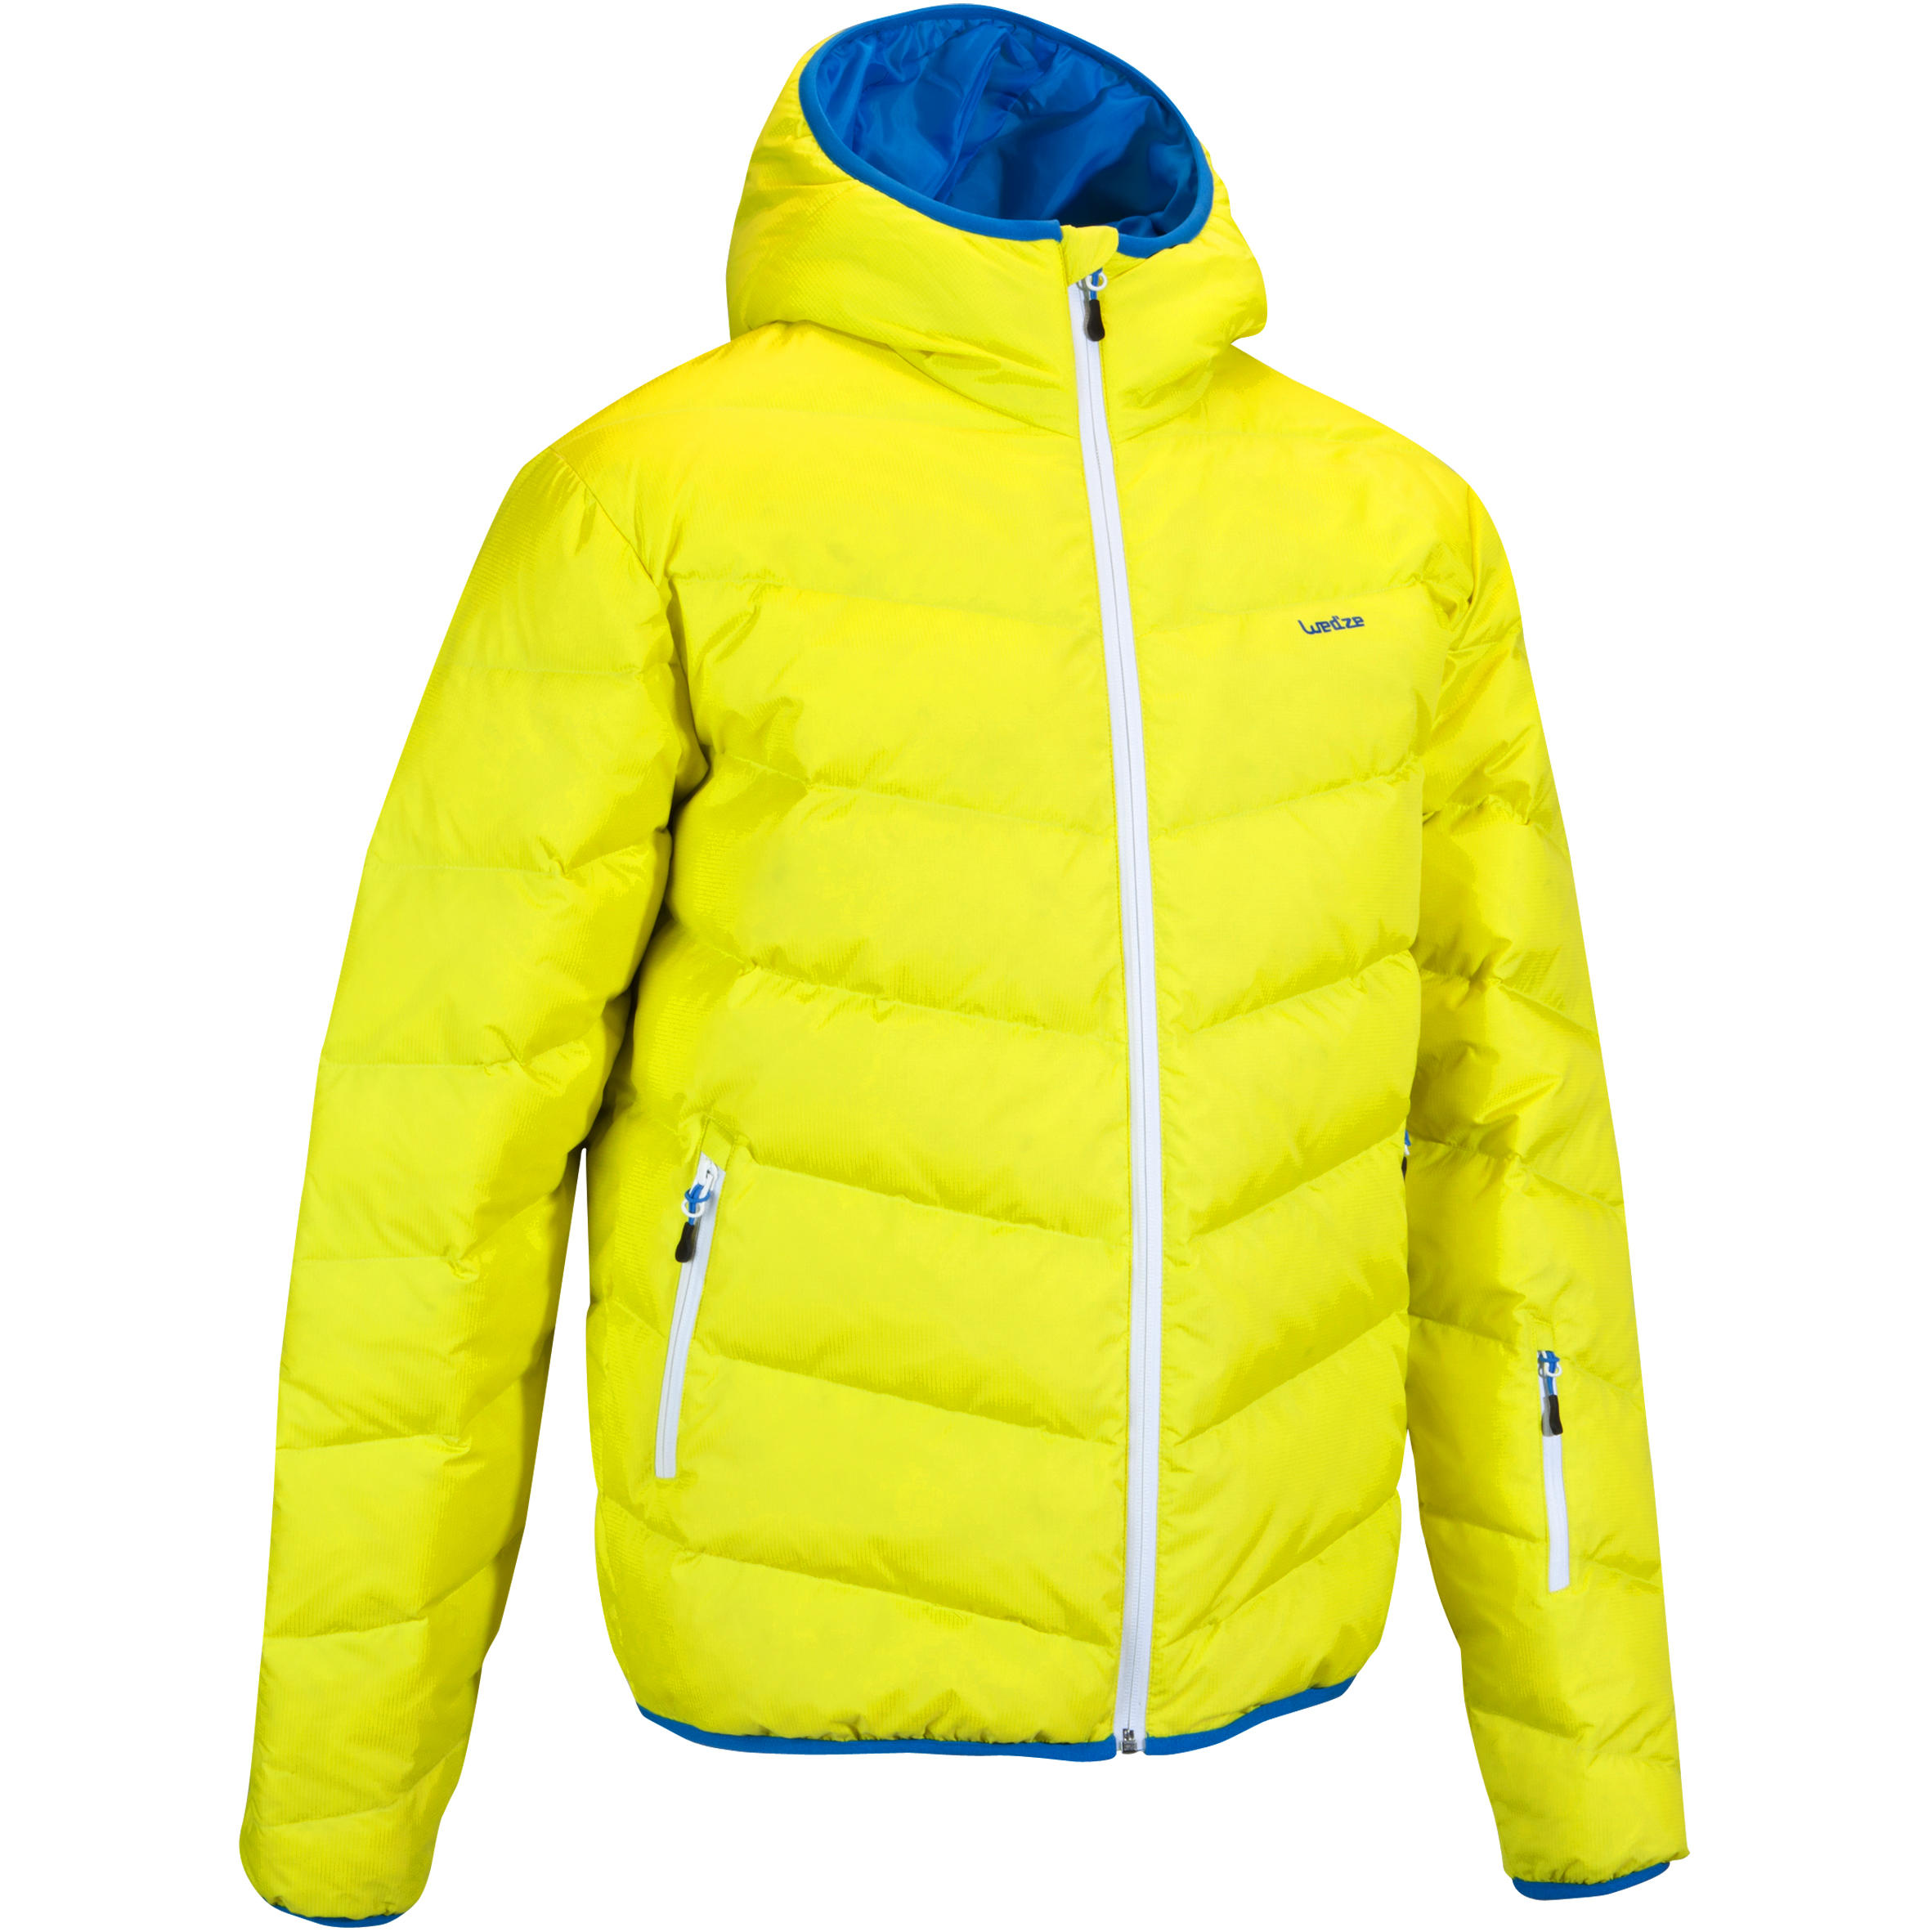 WEDZE Slide 300 Men's Warm Ski Jacket - Yellow